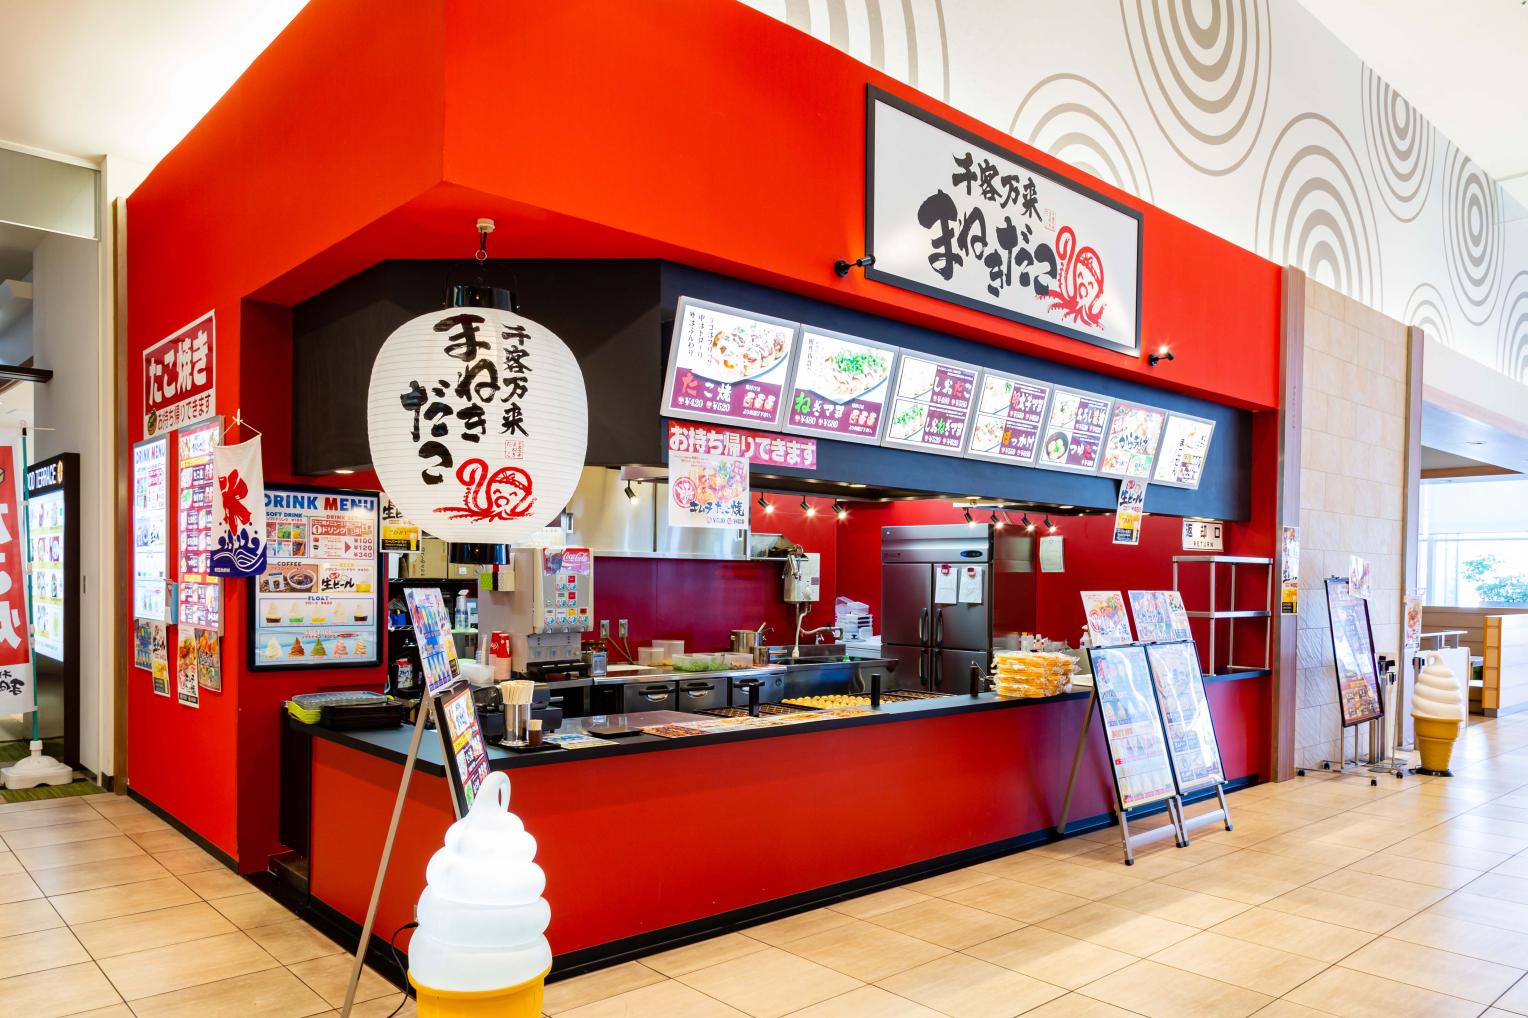 本場大阪の「たこ焼」が食べられる屋台感覚のお店